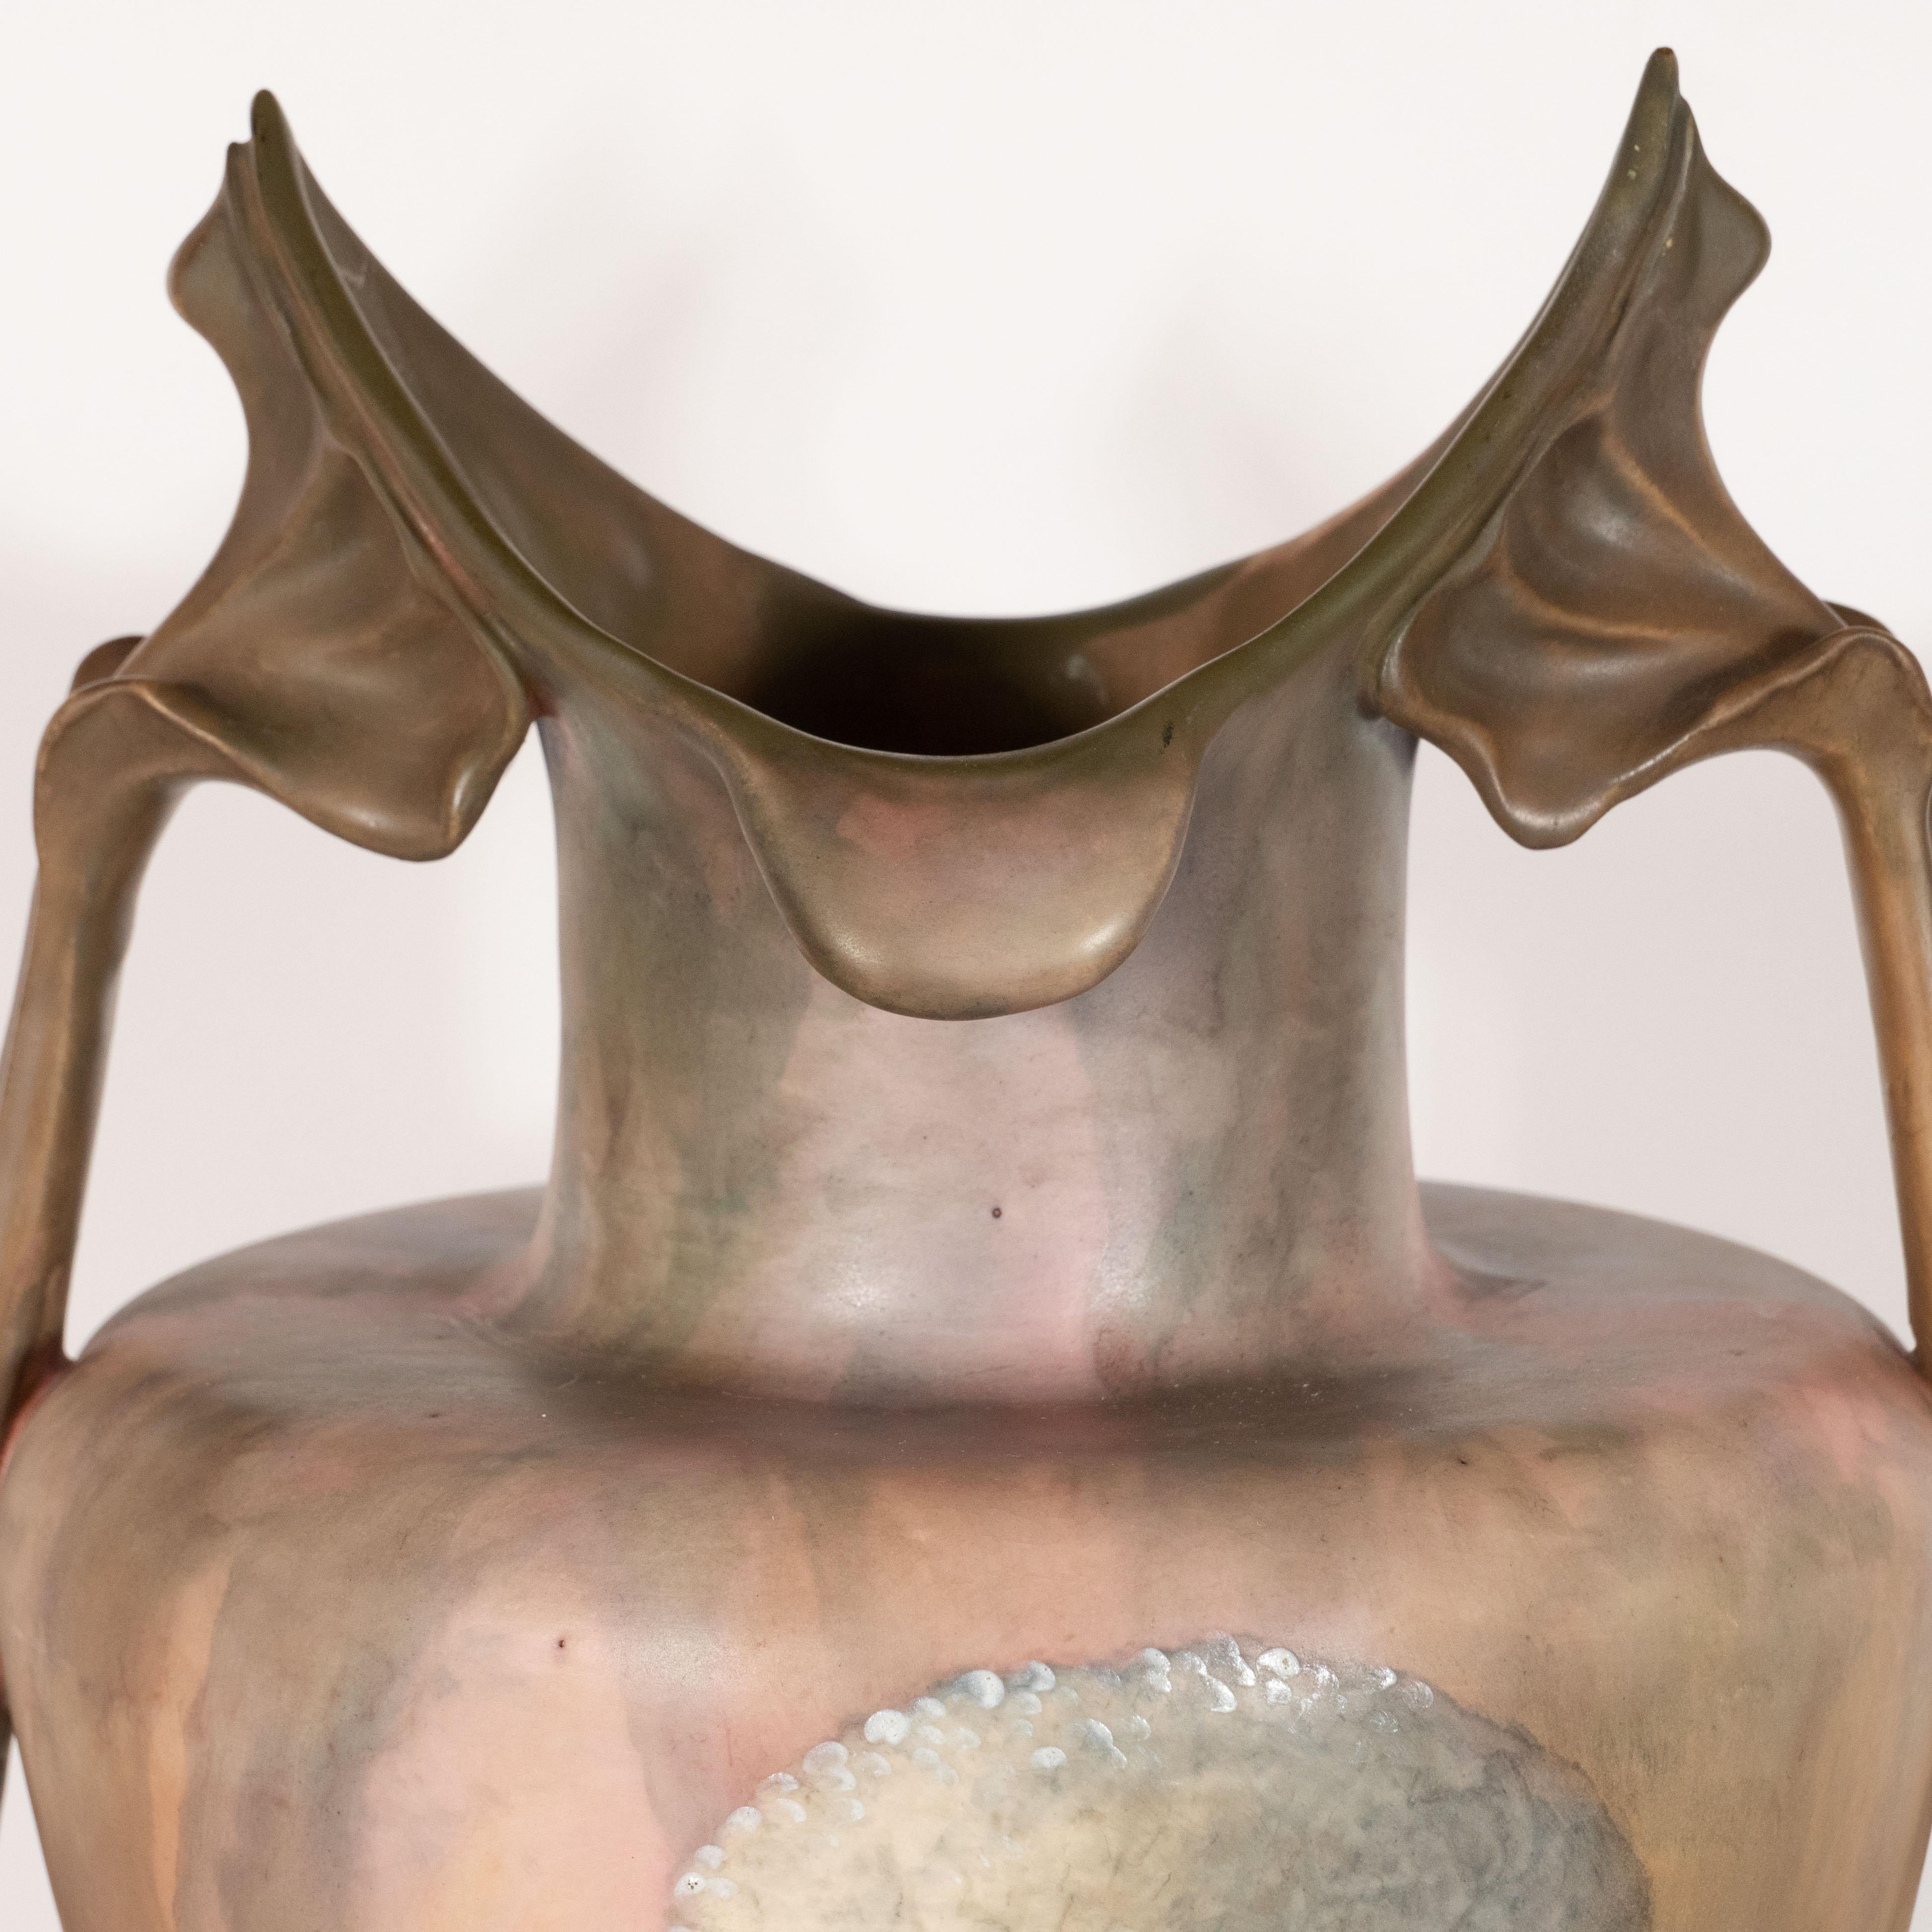 German Pair of Art Nouveau Hand Painted Sculptural Ceramic Vases by Royal Bonn